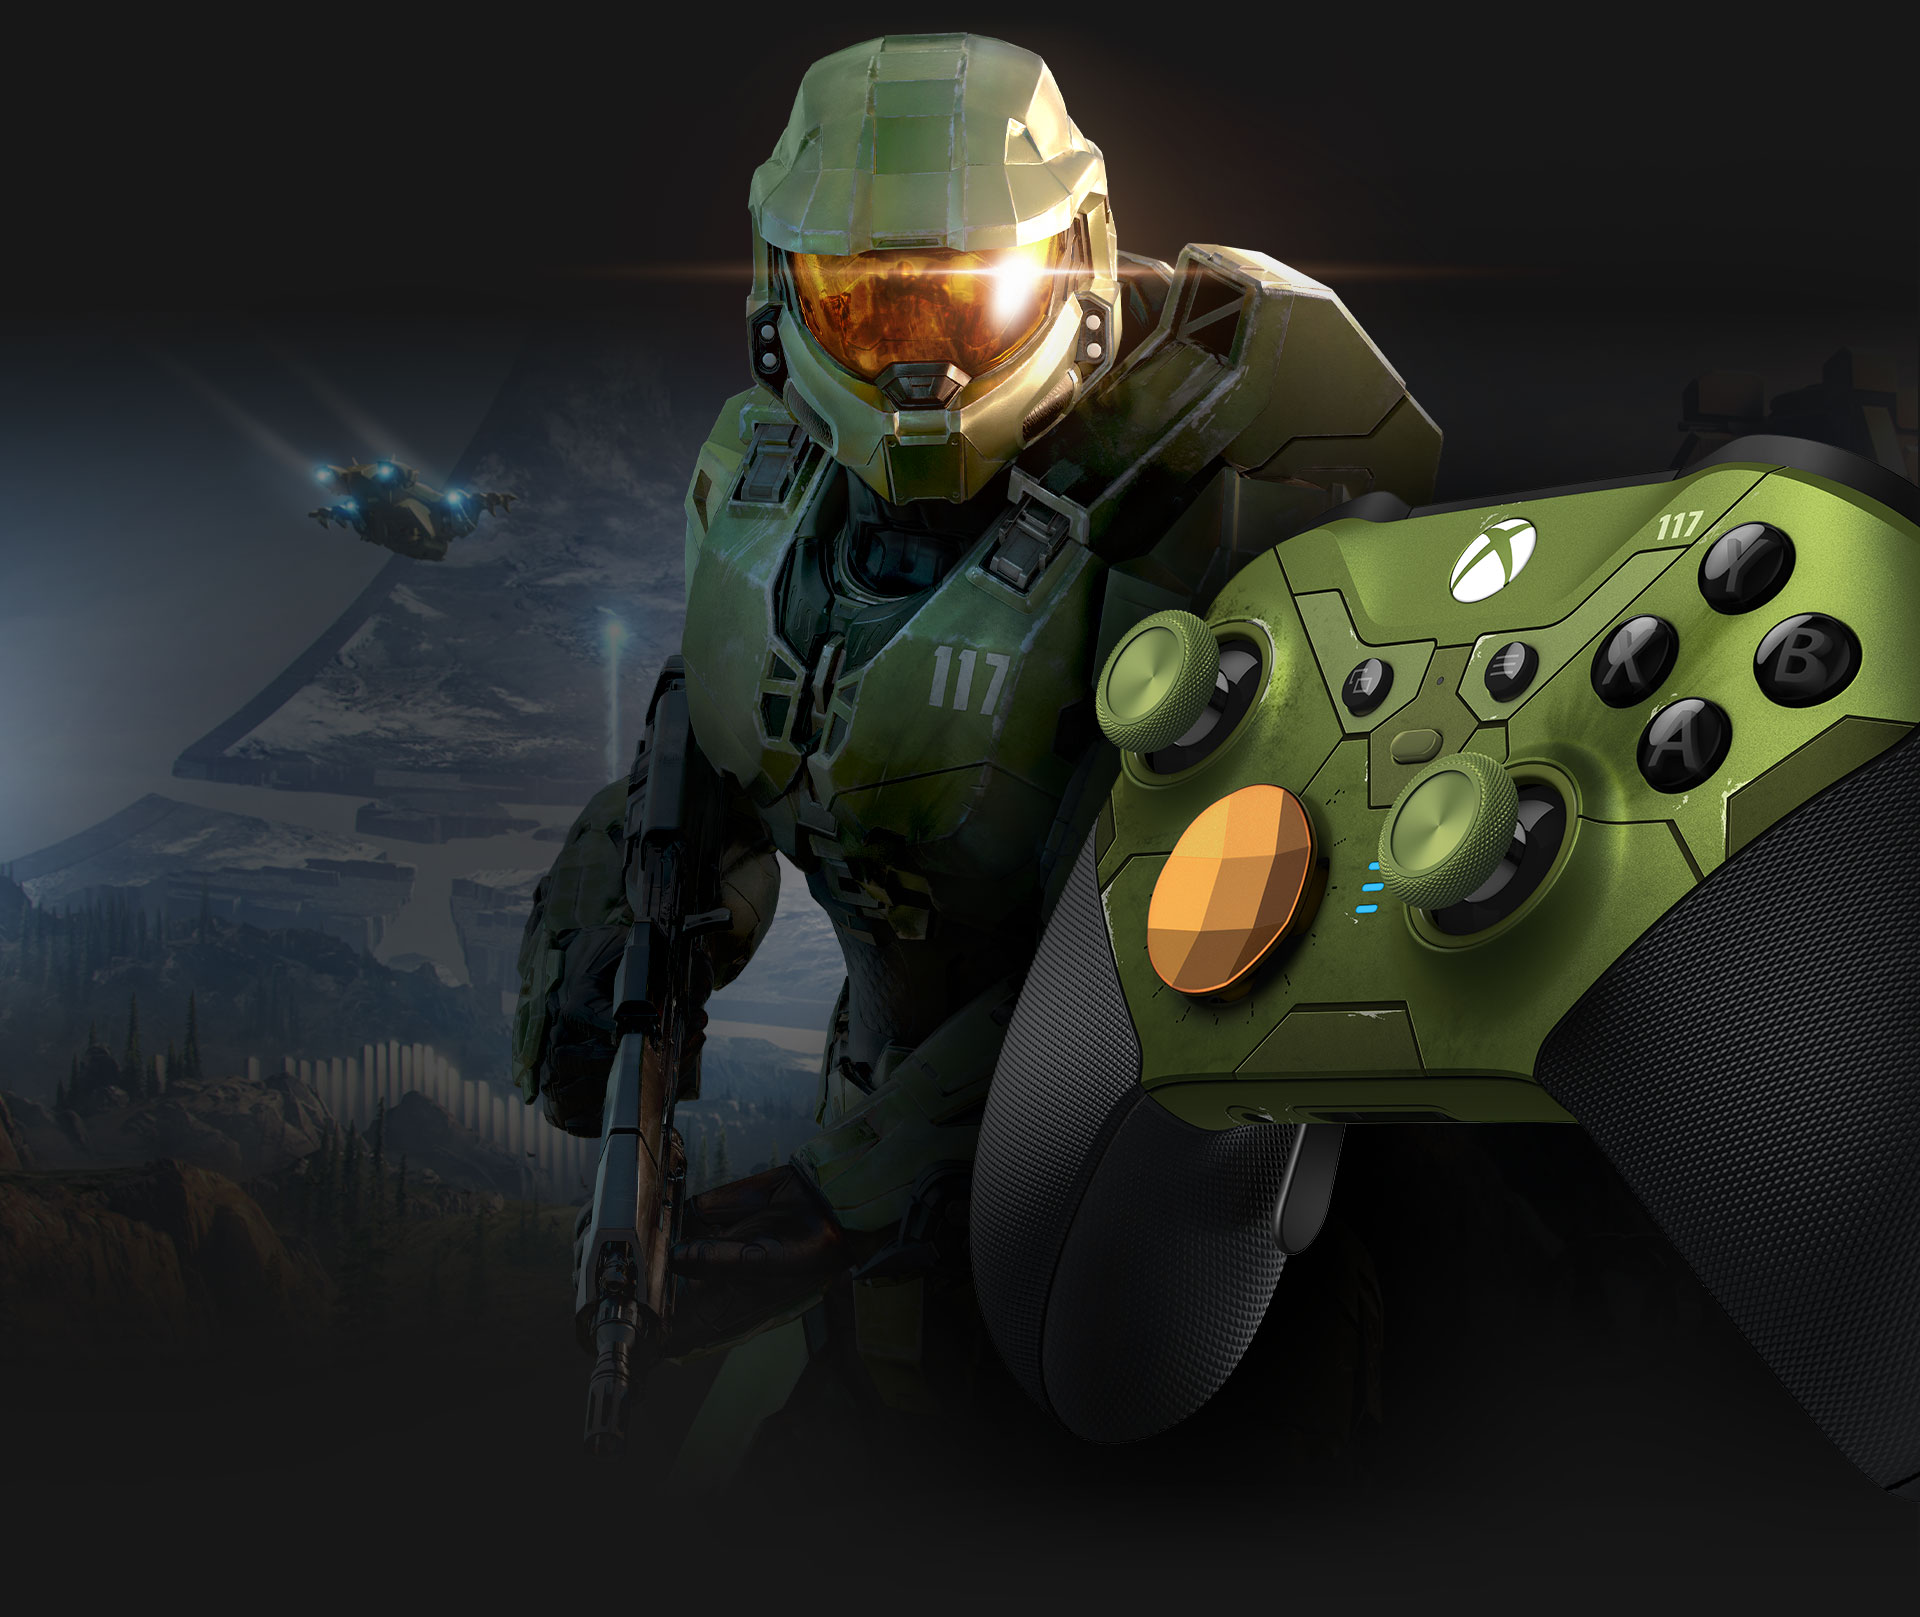 Bezprzewodowy kontroler Xbox Elite Series 2 w wersji Halo Infinite z postacią Master Chief widziany z lewej